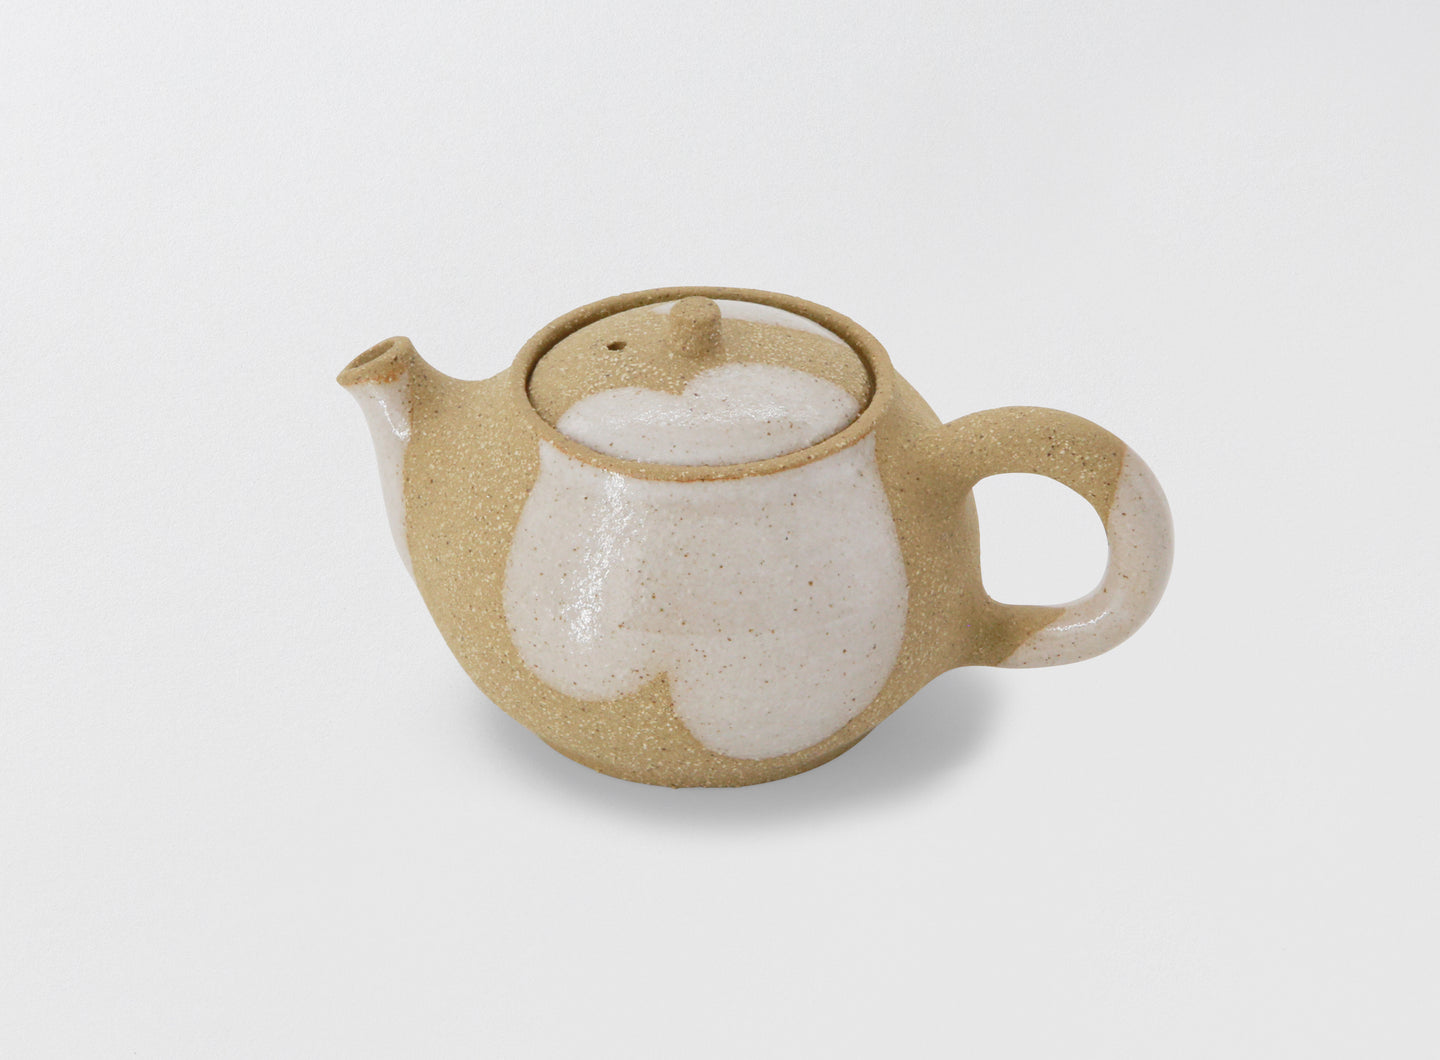 Karina Klages - Back-Handle Teapot